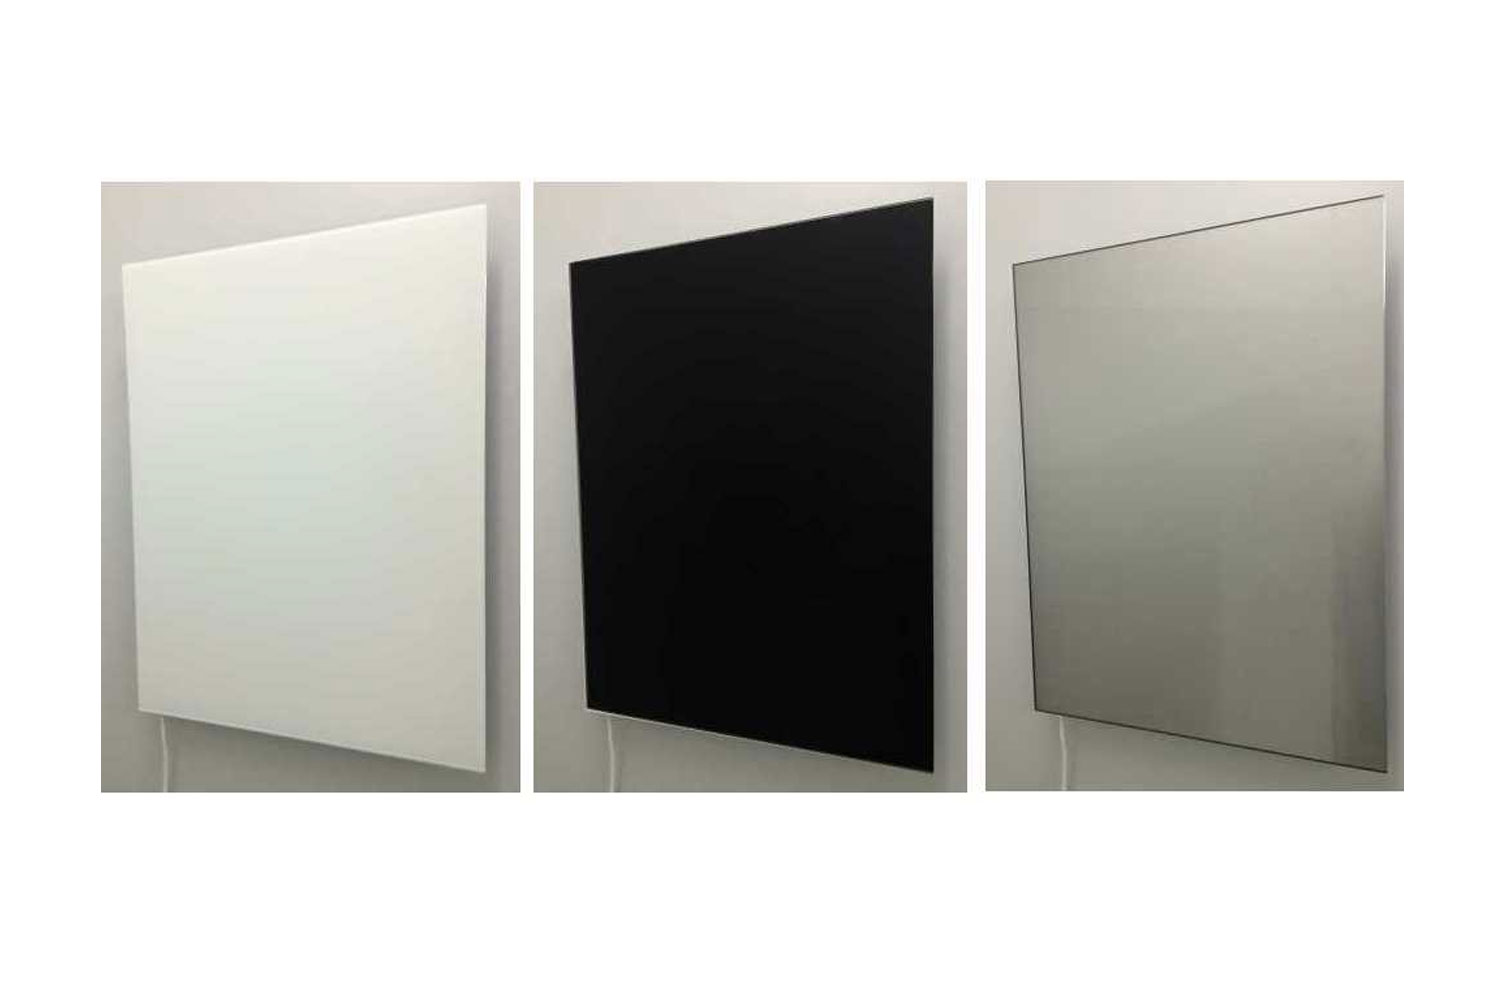 Infrarot Heizkörper 60x100cm, Farbe weiß, schwarz oder als Spiegel, Front aus Sicherheitsglas - sehr edles Design